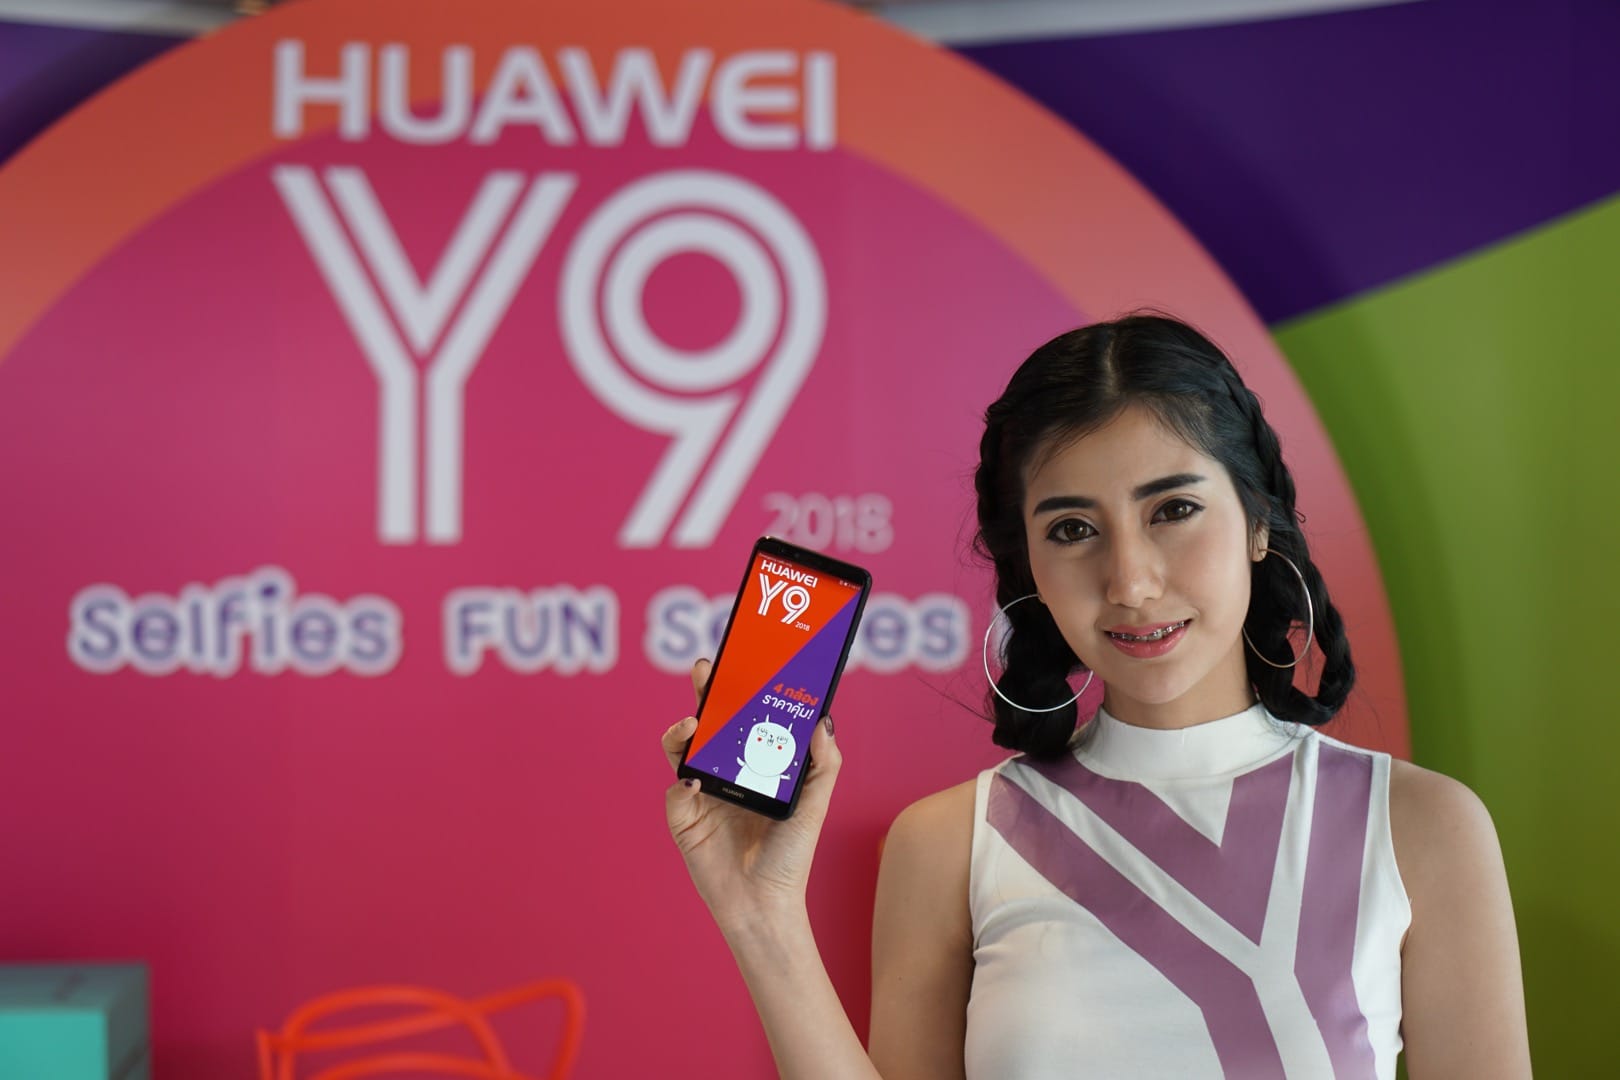 พร้อมขาย! Huawei Y9 2018 มือถือ 4 กล้อง จอ Full HD+ ราคาแค่ 6,990 บาท